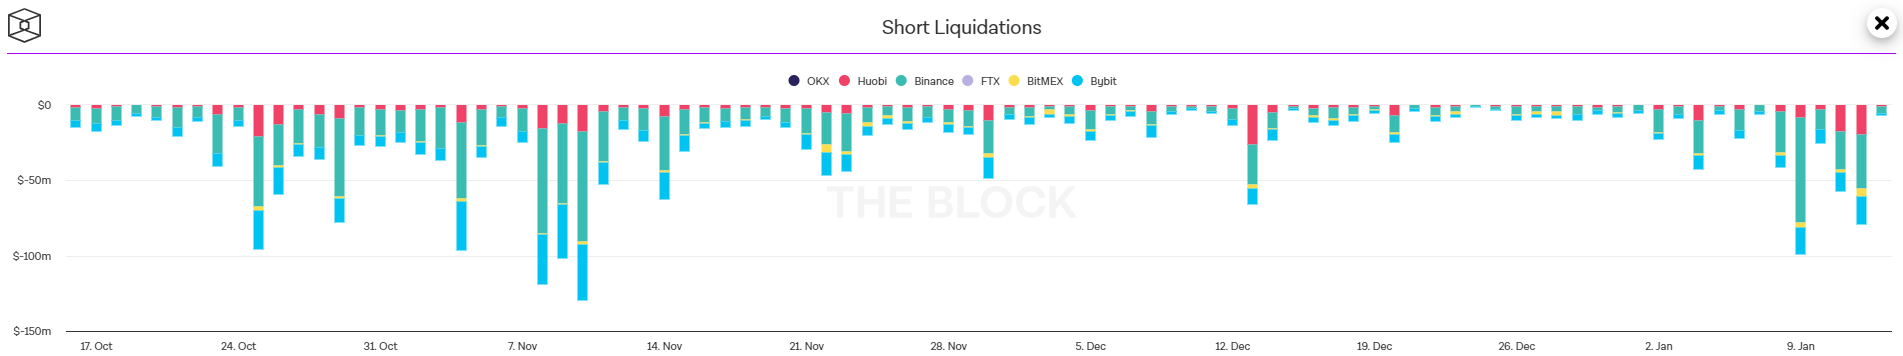 Short-Liquidation, Quelle: The Block